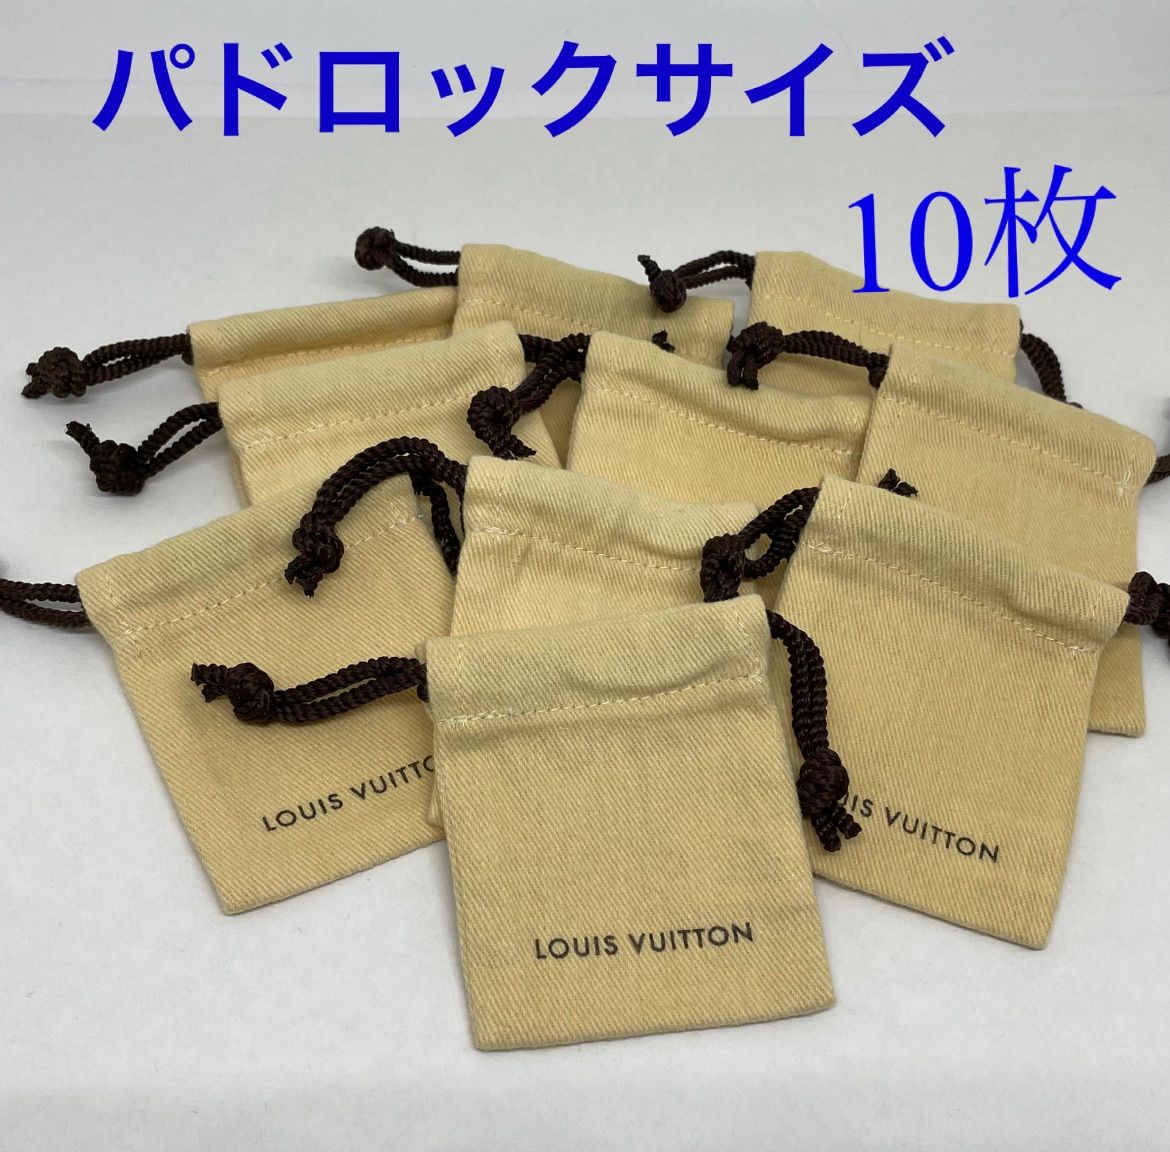 ルイヴィトン 保存袋 (中) 10枚セット 【正規品】保存袋 - ショップ袋